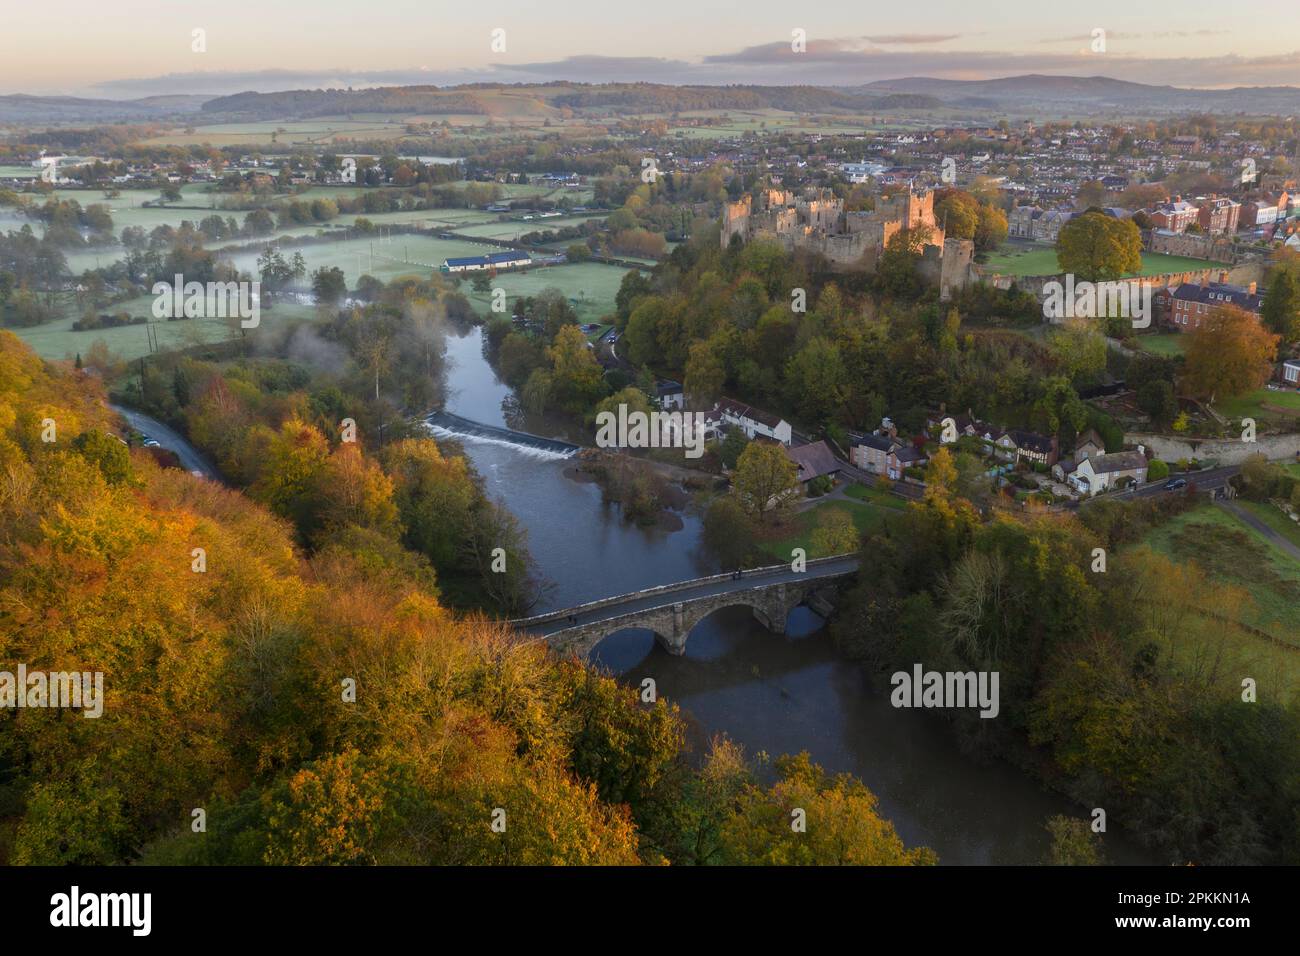 Vue aérienne du château de Ludlow au-dessus des rives de la Tée en automne, Ludlow, Shropshire, Angleterre, Royaume-Uni, Europe Banque D'Images